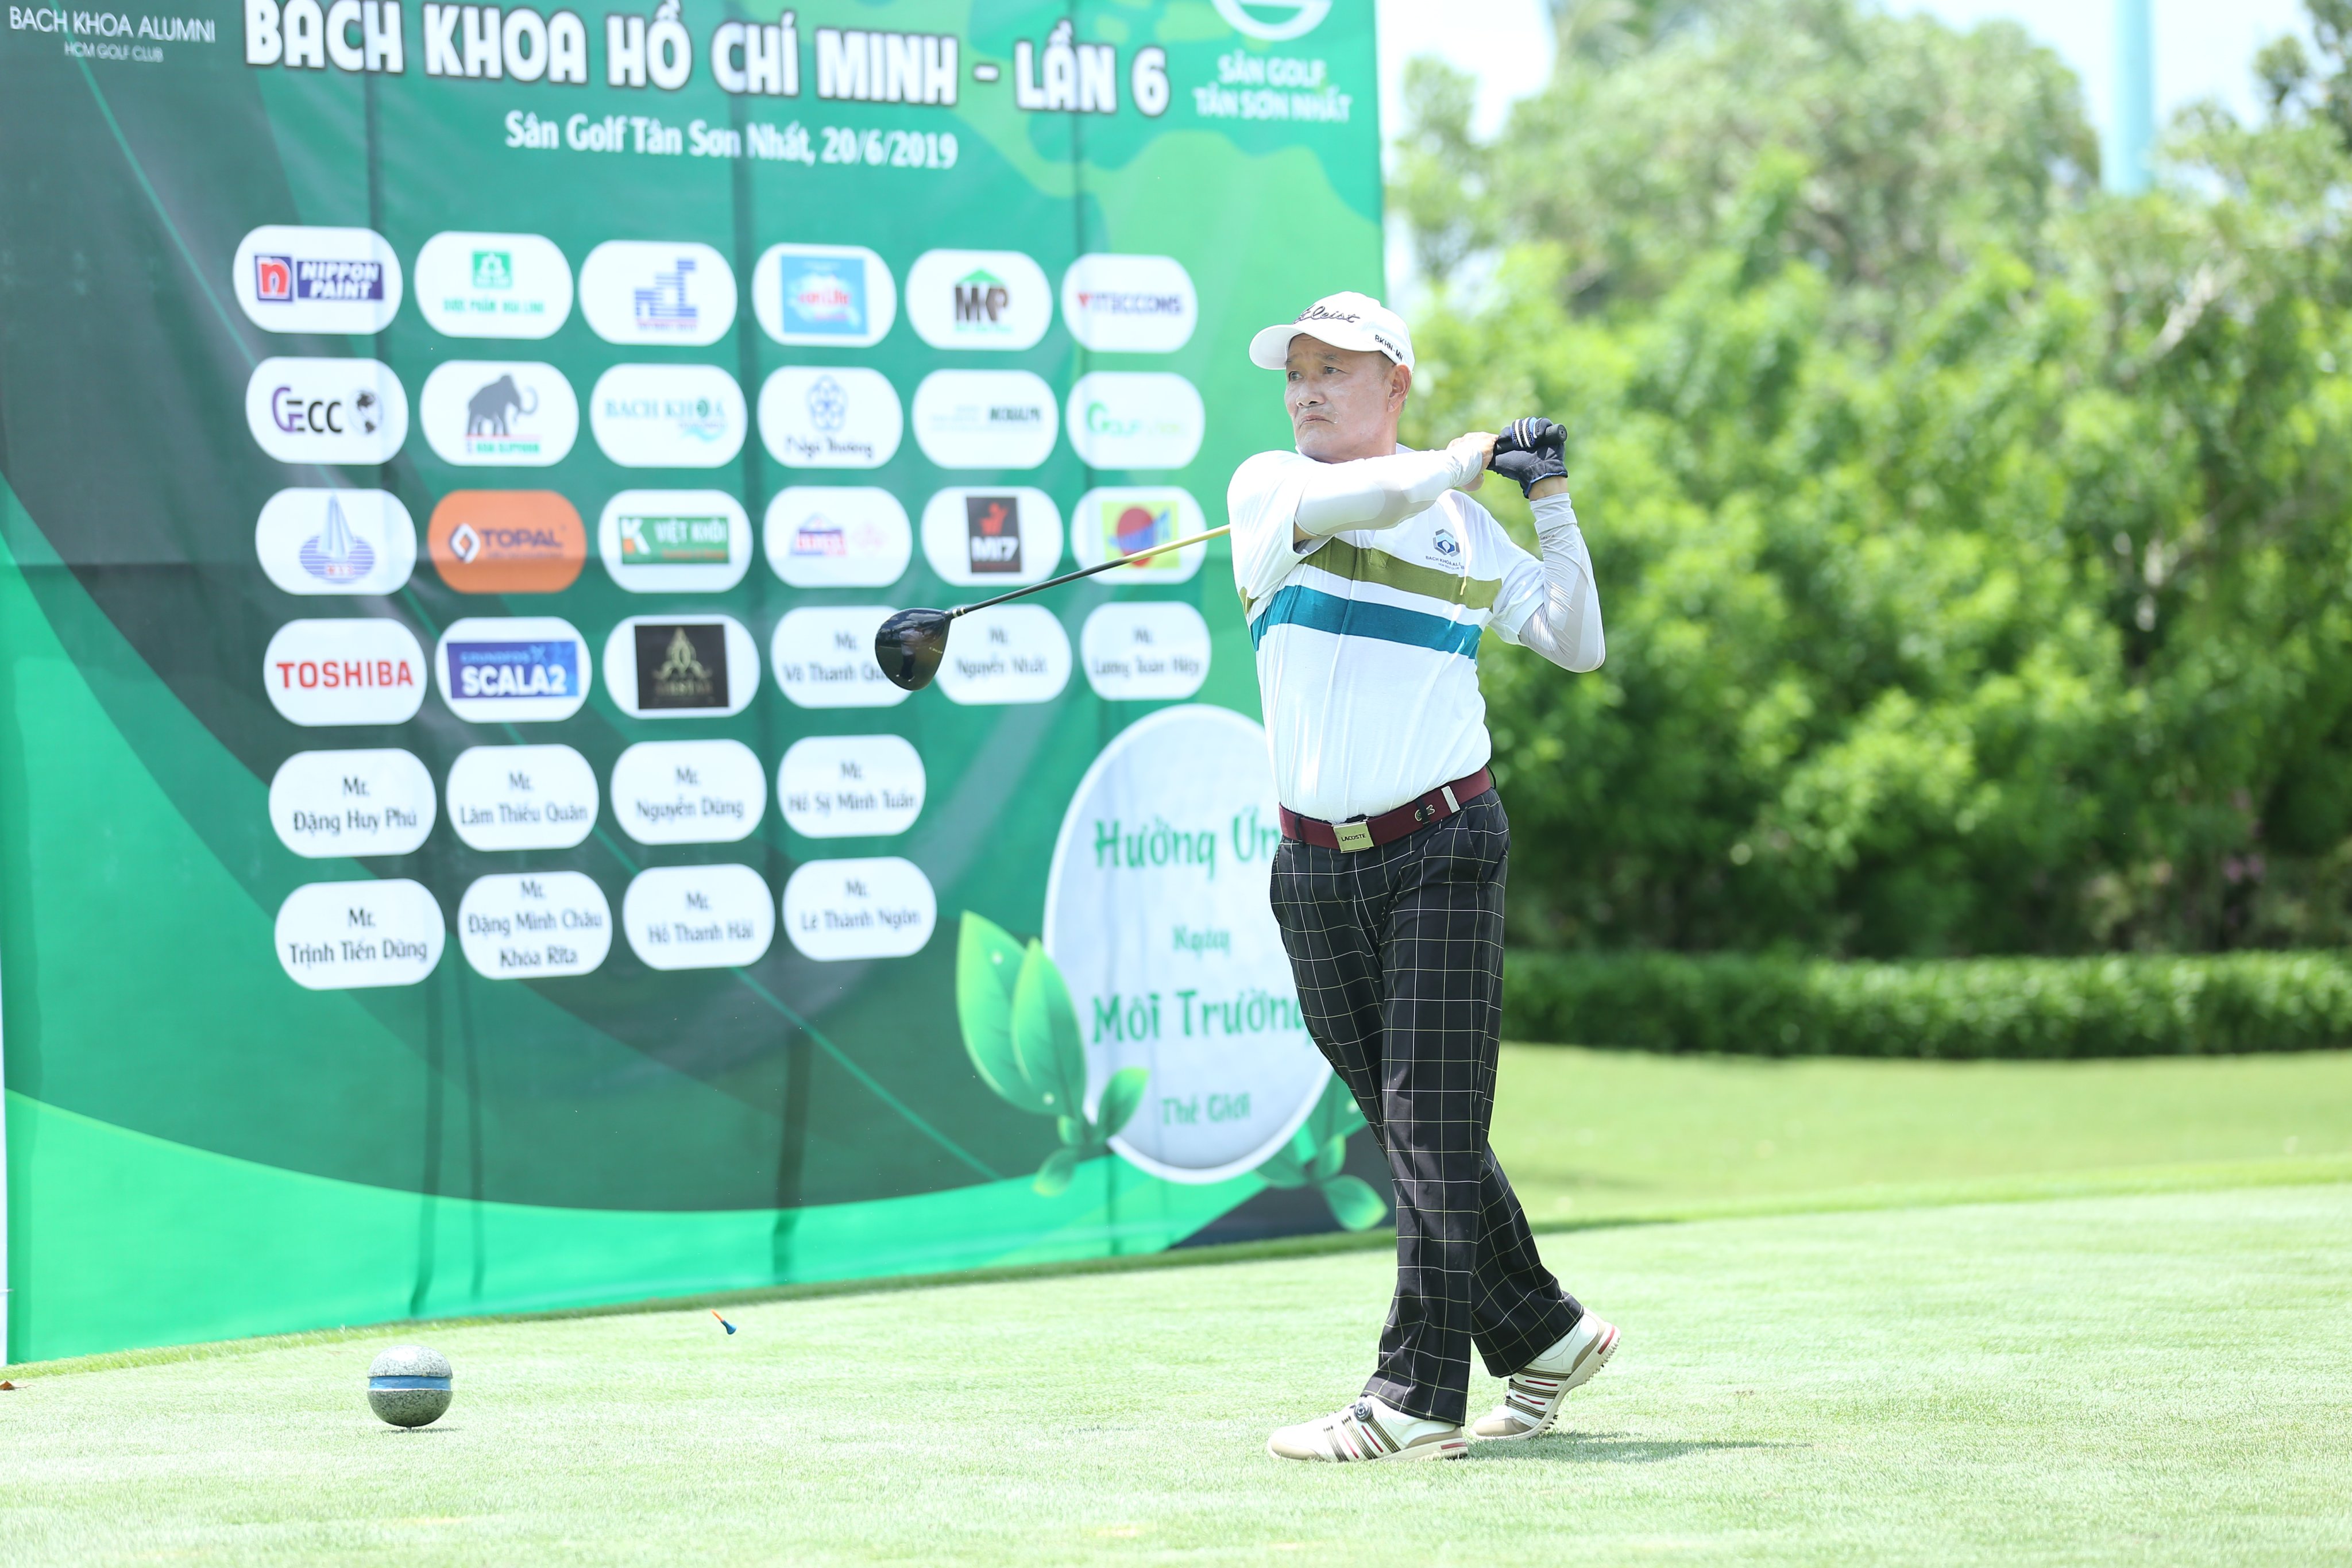 Gần 120 golfer tranh tài tại giải golf CLB Bách Khoa Tp Hồ Chí Minh Lần thứ 6